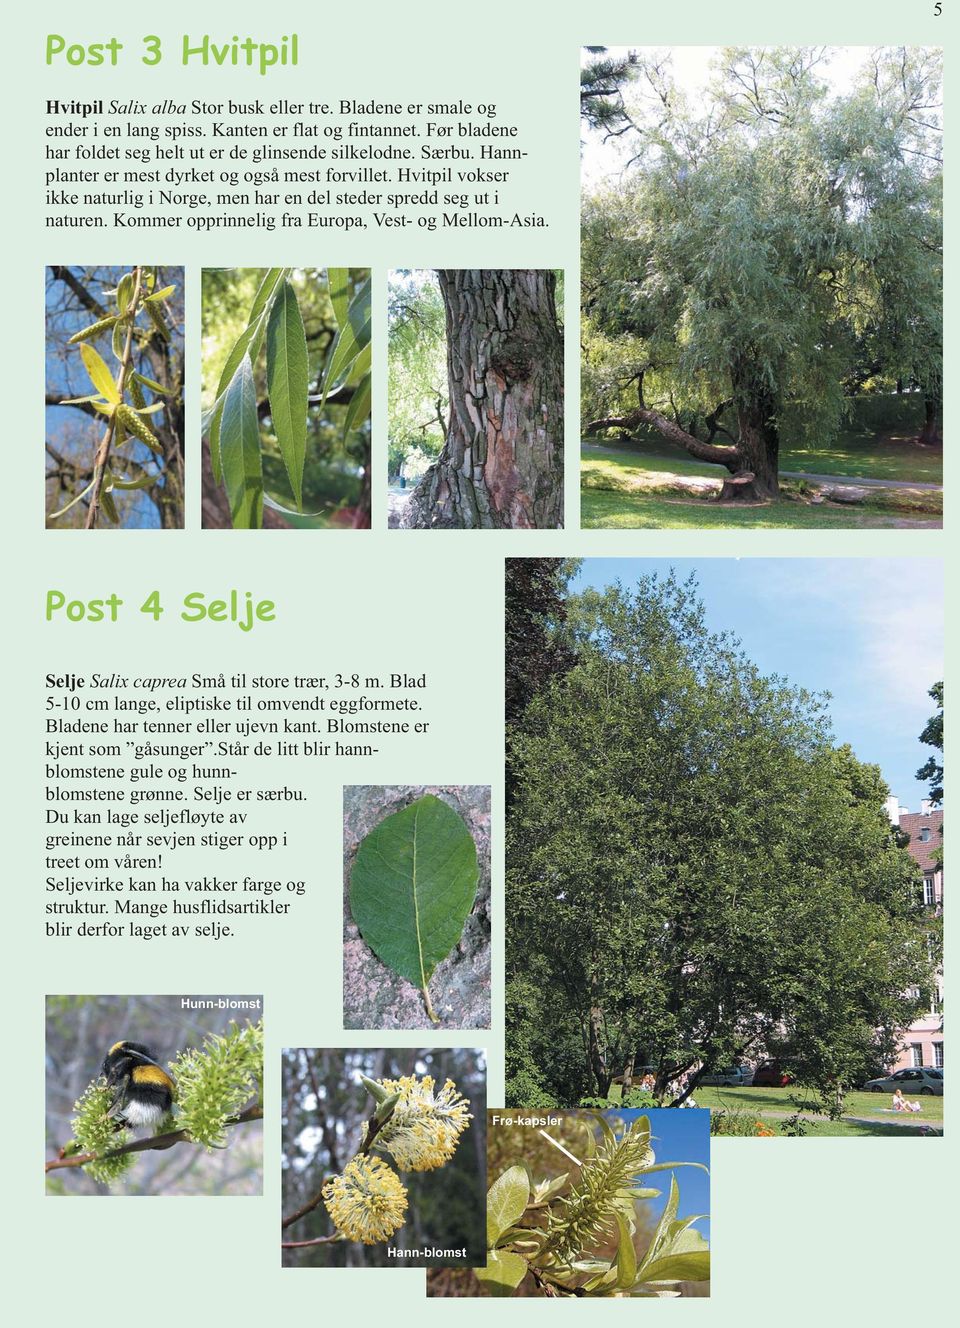 Post 4 Selje Selje Salix caprea Små til store trær, 3-8 m. Blad 5-10 cm lange, eliptiske til omvendt eggformete. Bladene har tenner eller ujevn kant. Blomstene er kjent som gåsunger.